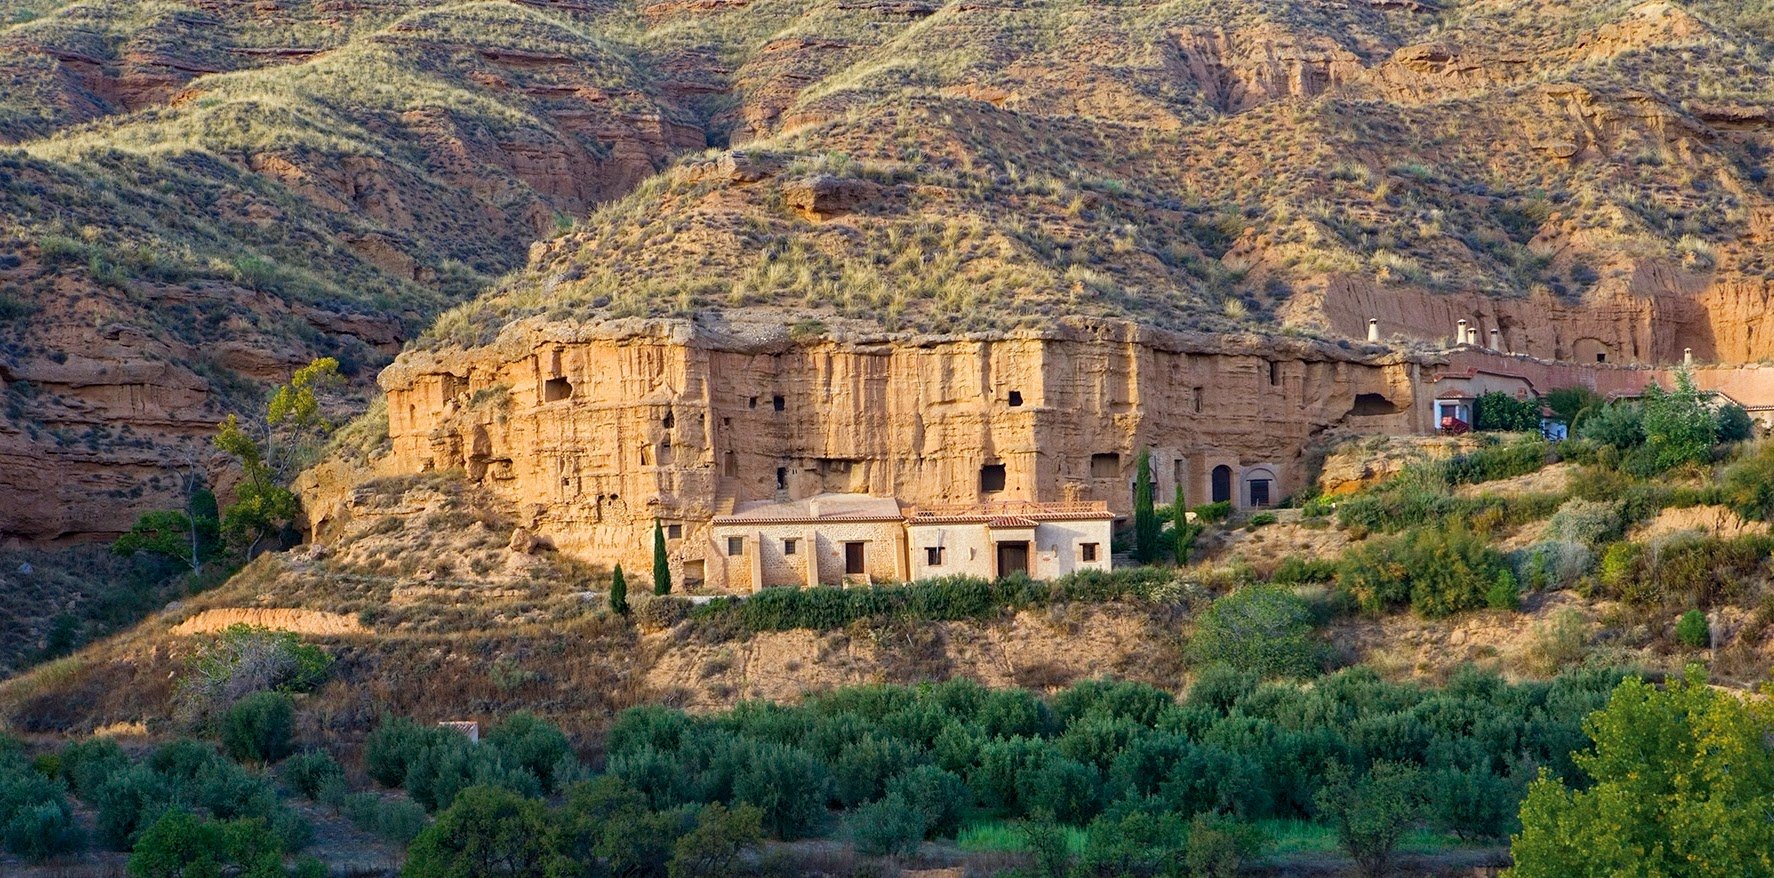 Un alojamiento construido en antiguas cuevas para descubrir la provincia de Granada